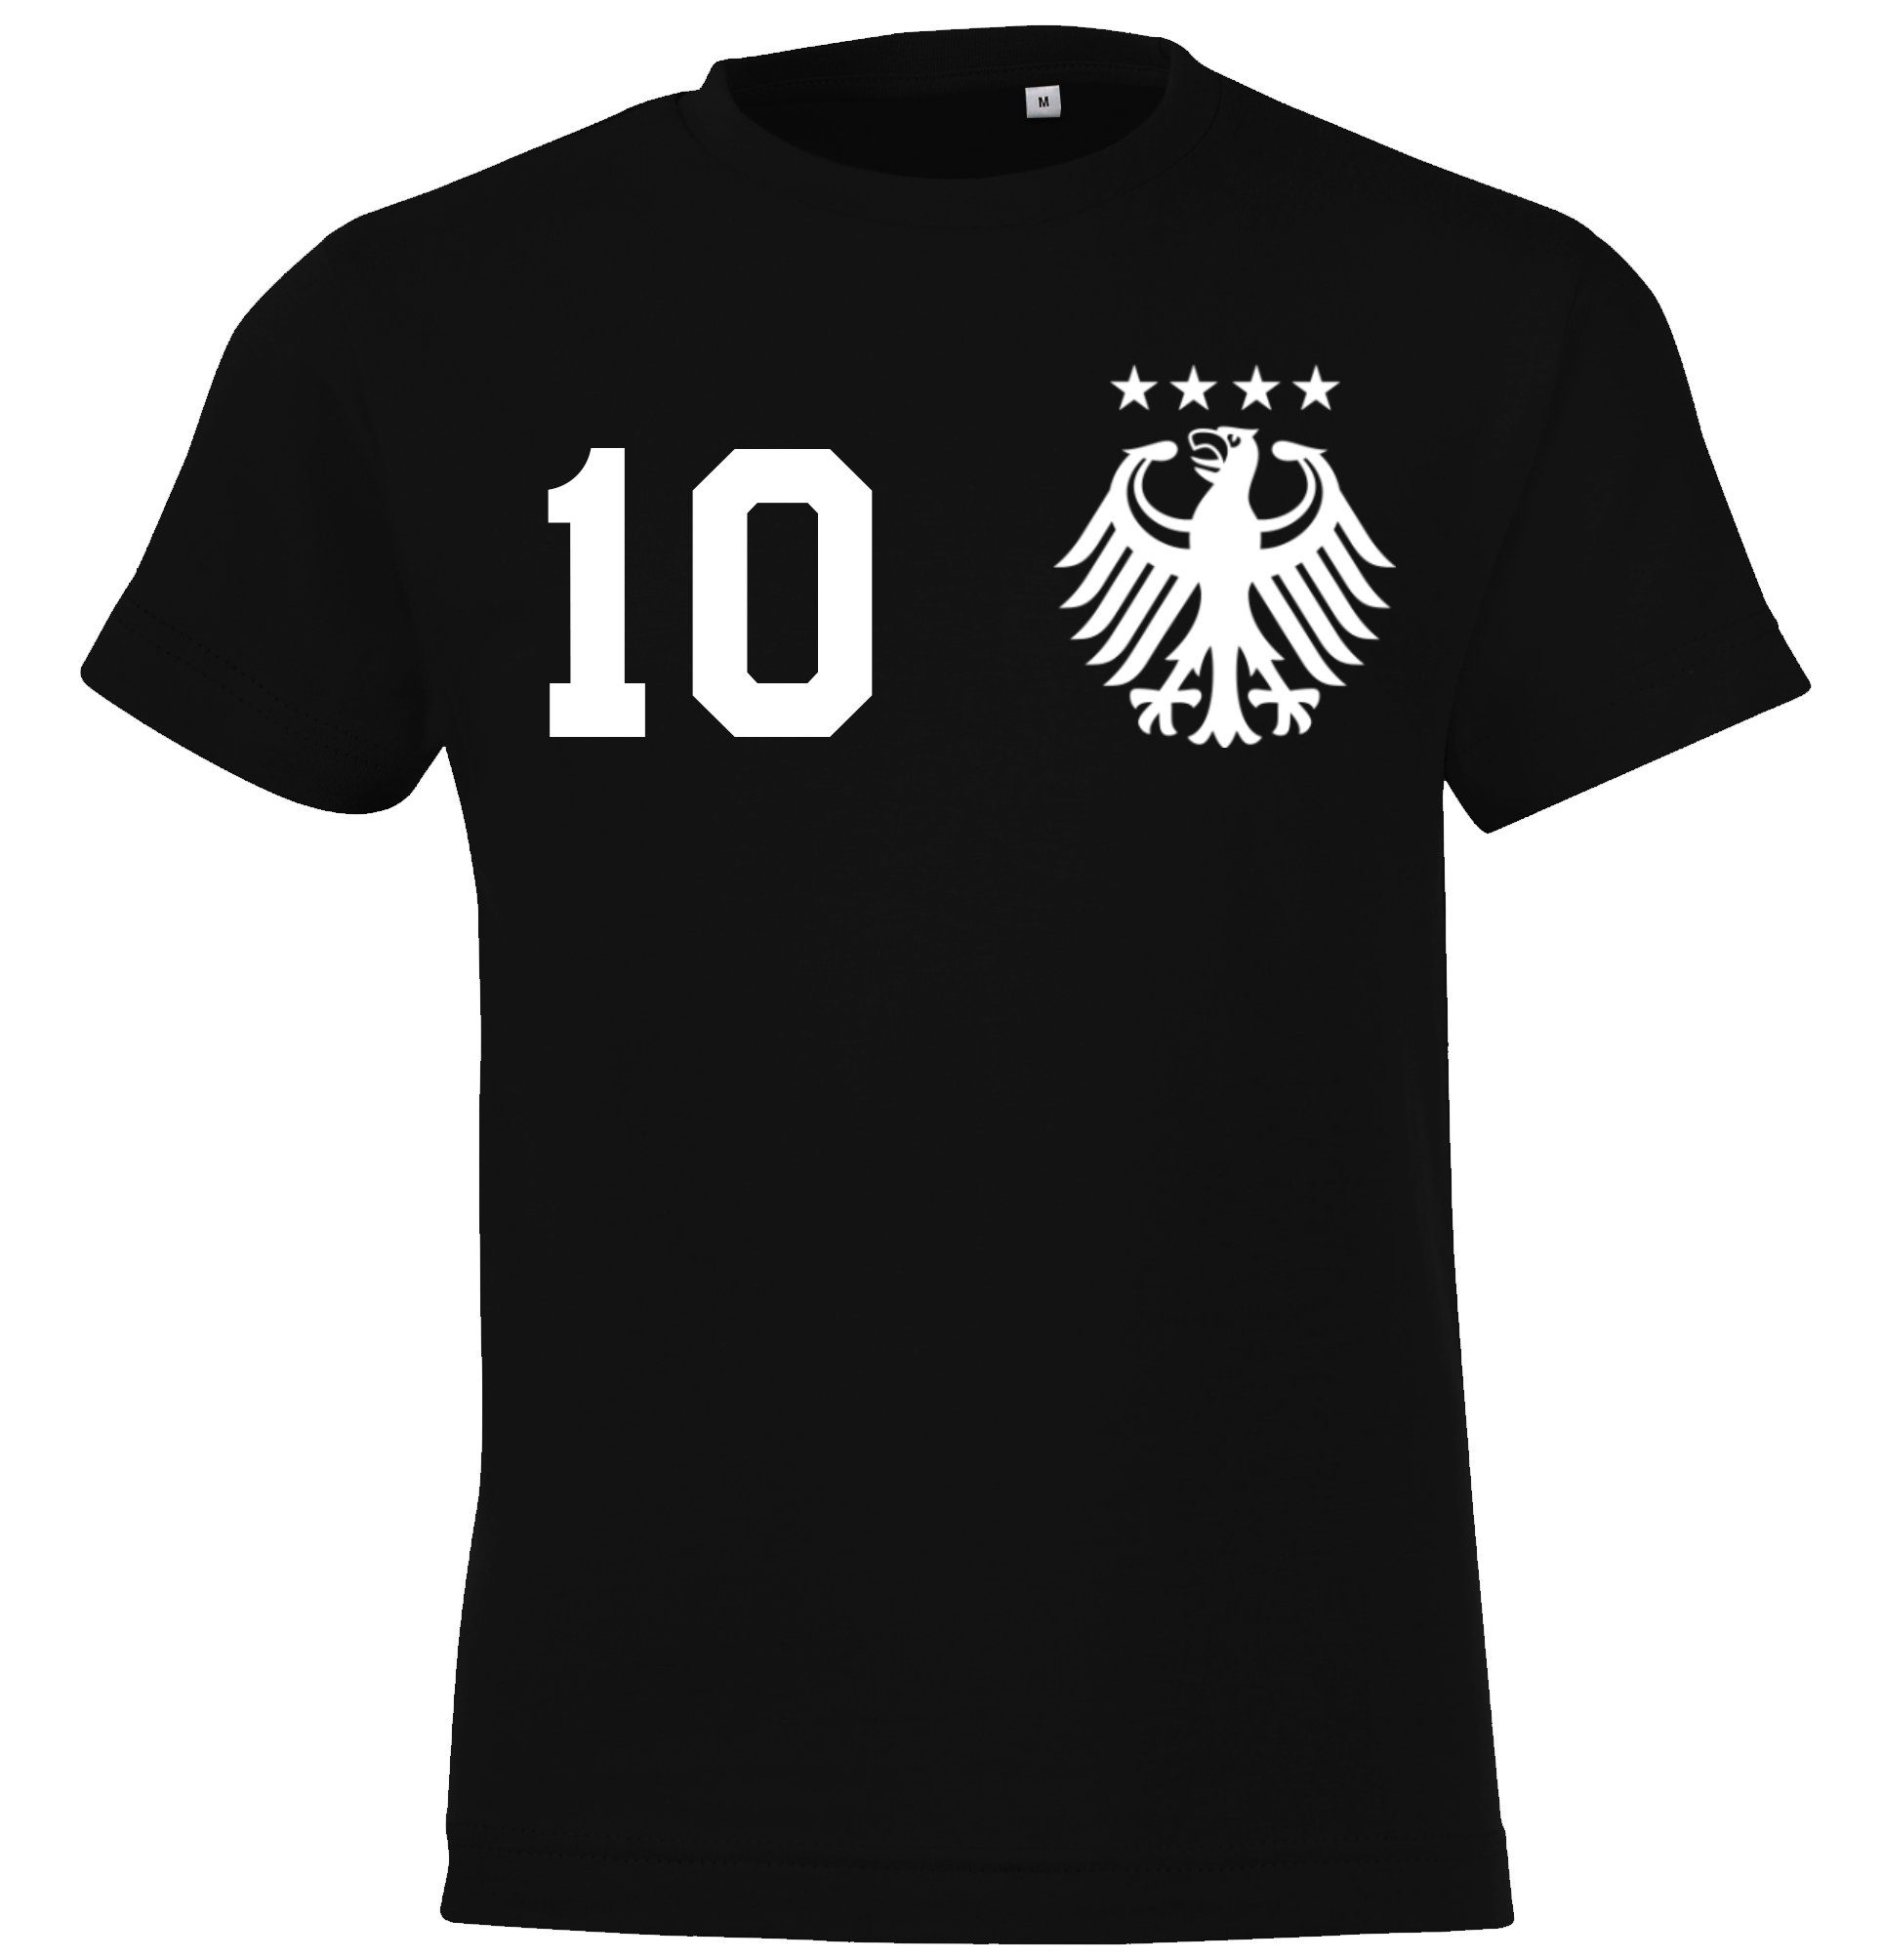 Kinder Designz trendigem T-Shirt T-Shirt Trikot Motiv Schwarz Fußball Youth mit Look im Deutschland